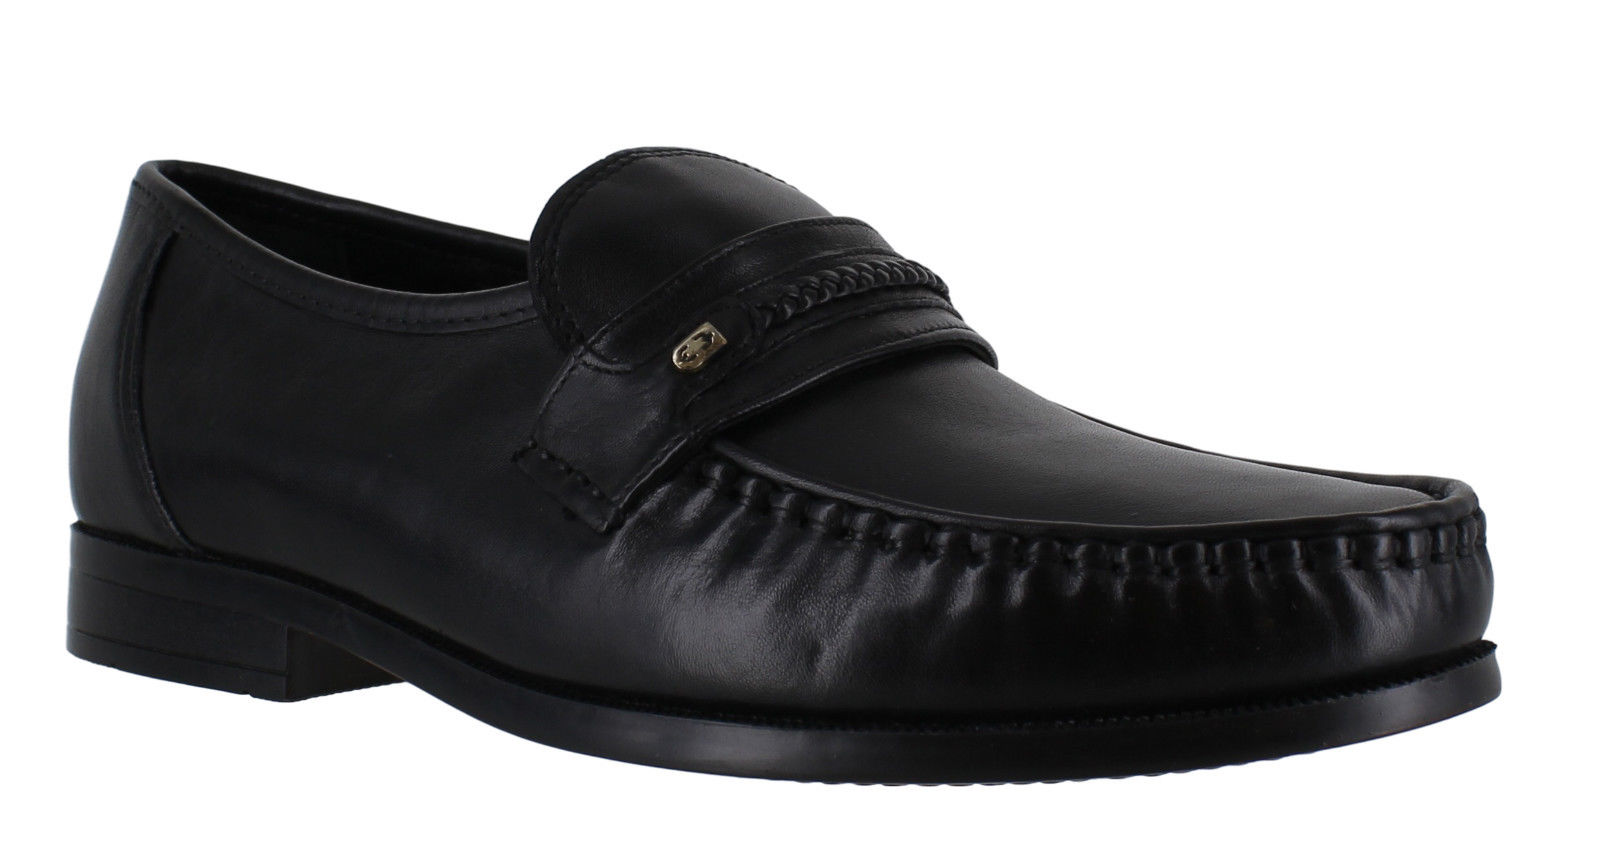 ERAM Mens Black Leather Smart Casual Formal Moccasins Slip On Shoes | eBay